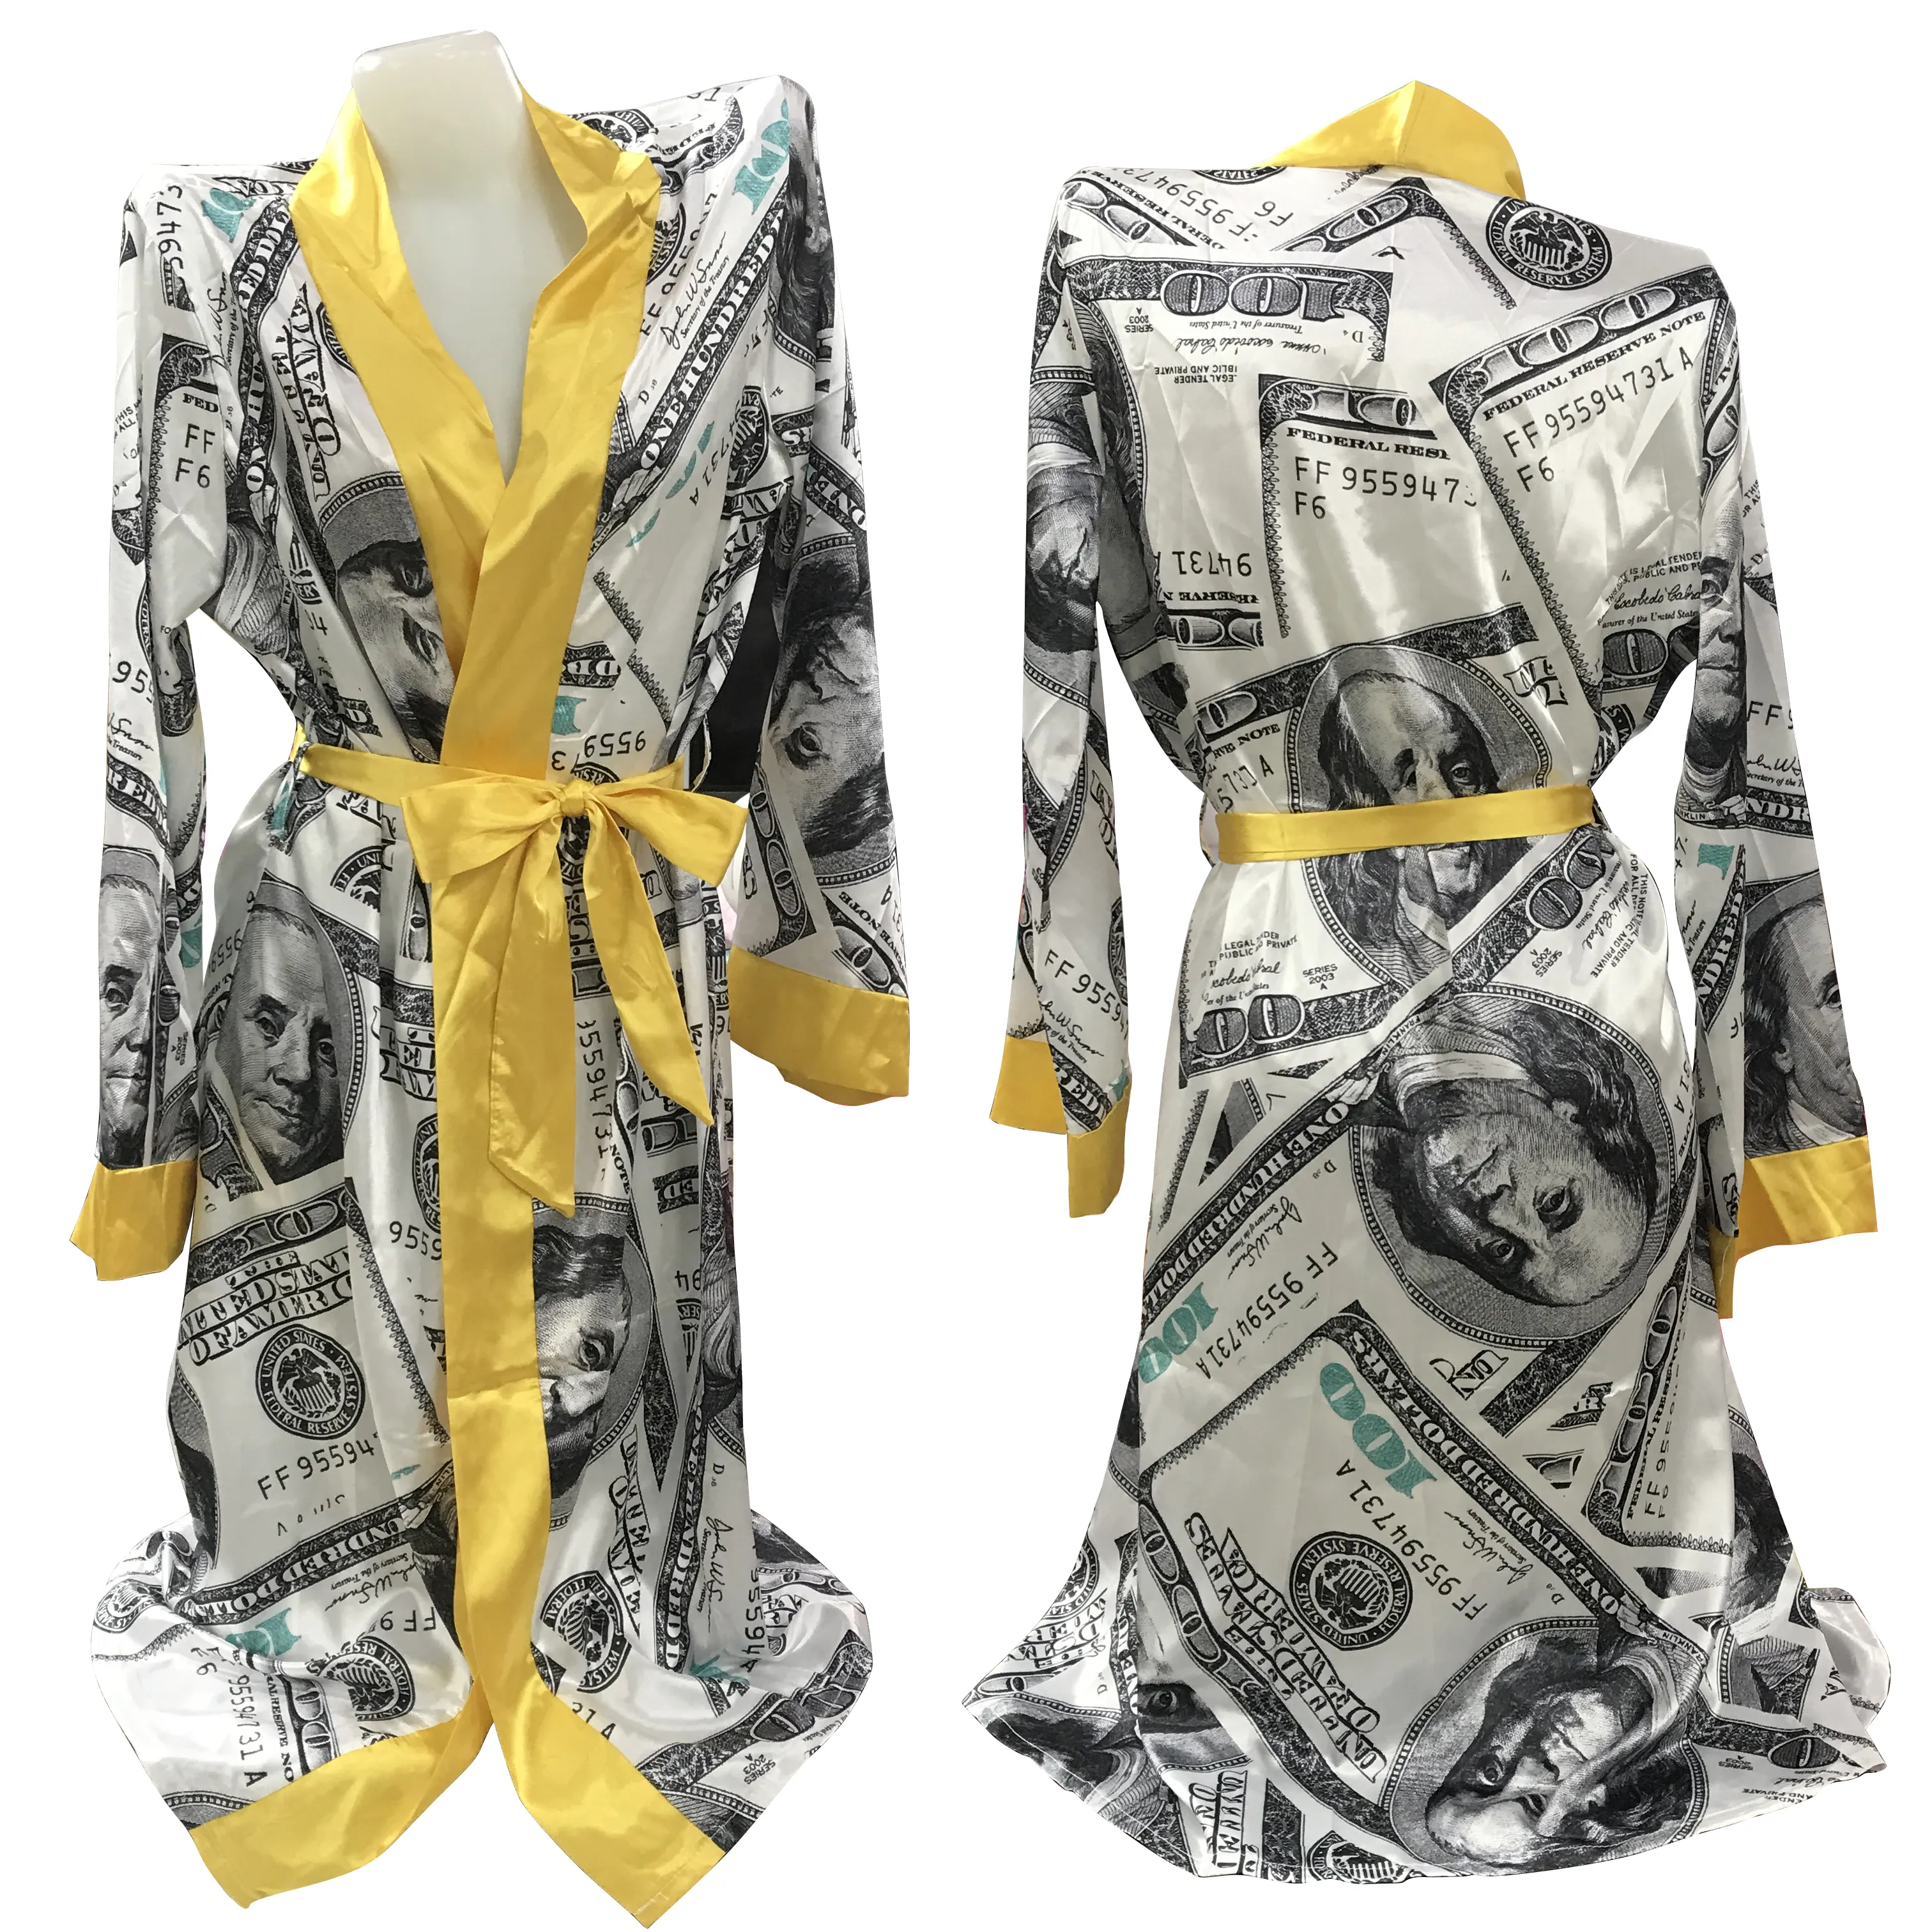 satin robes long sleeve shirt dress button silk night dresses comfortable sleep wear robe wear women